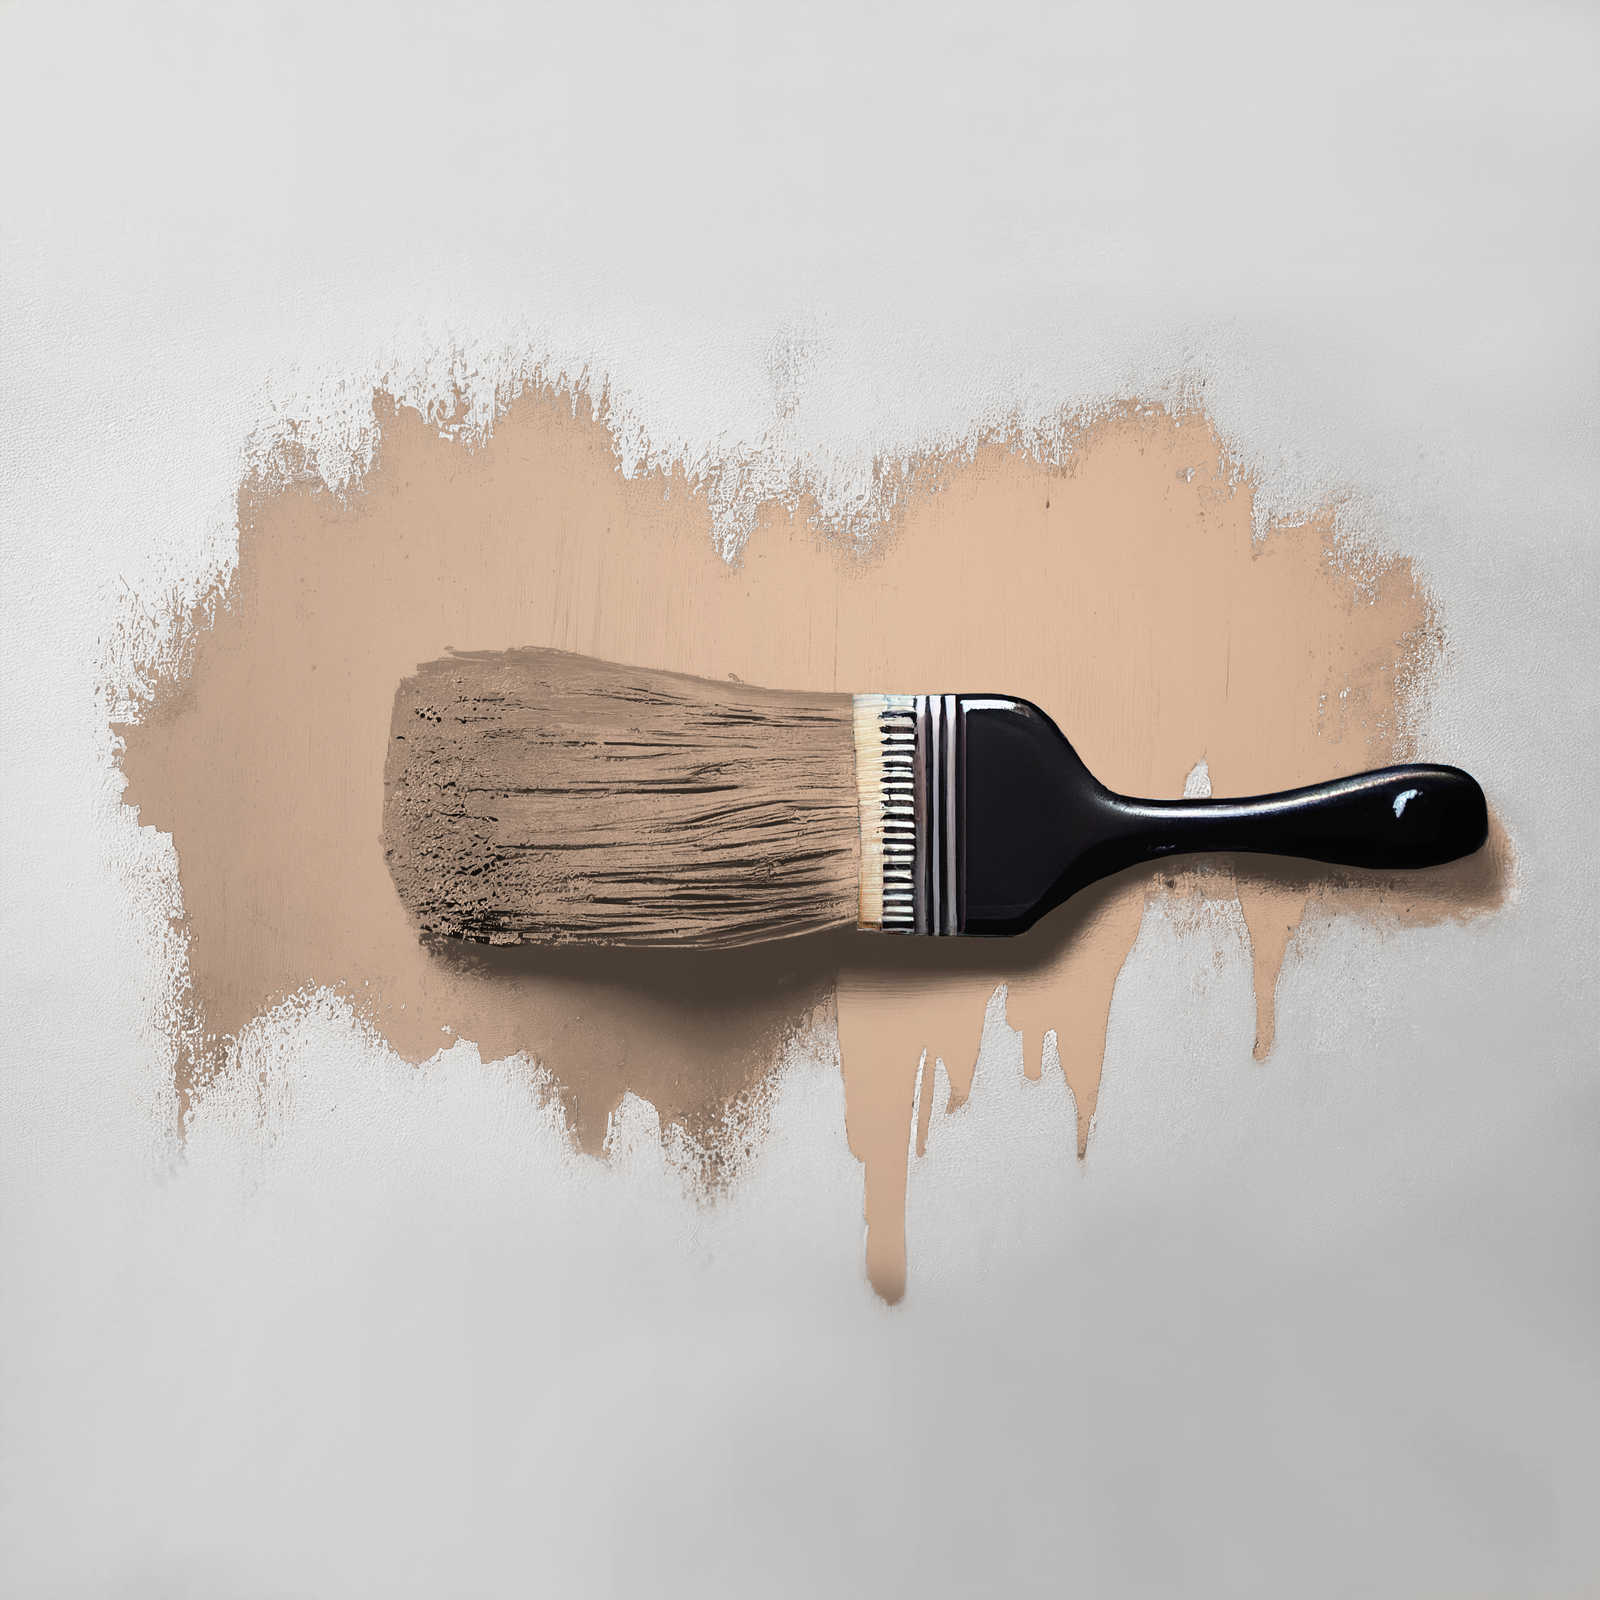             Wall Paint TCK6021 »Lovely Lentil« in warm beige – 5.0 litre
        